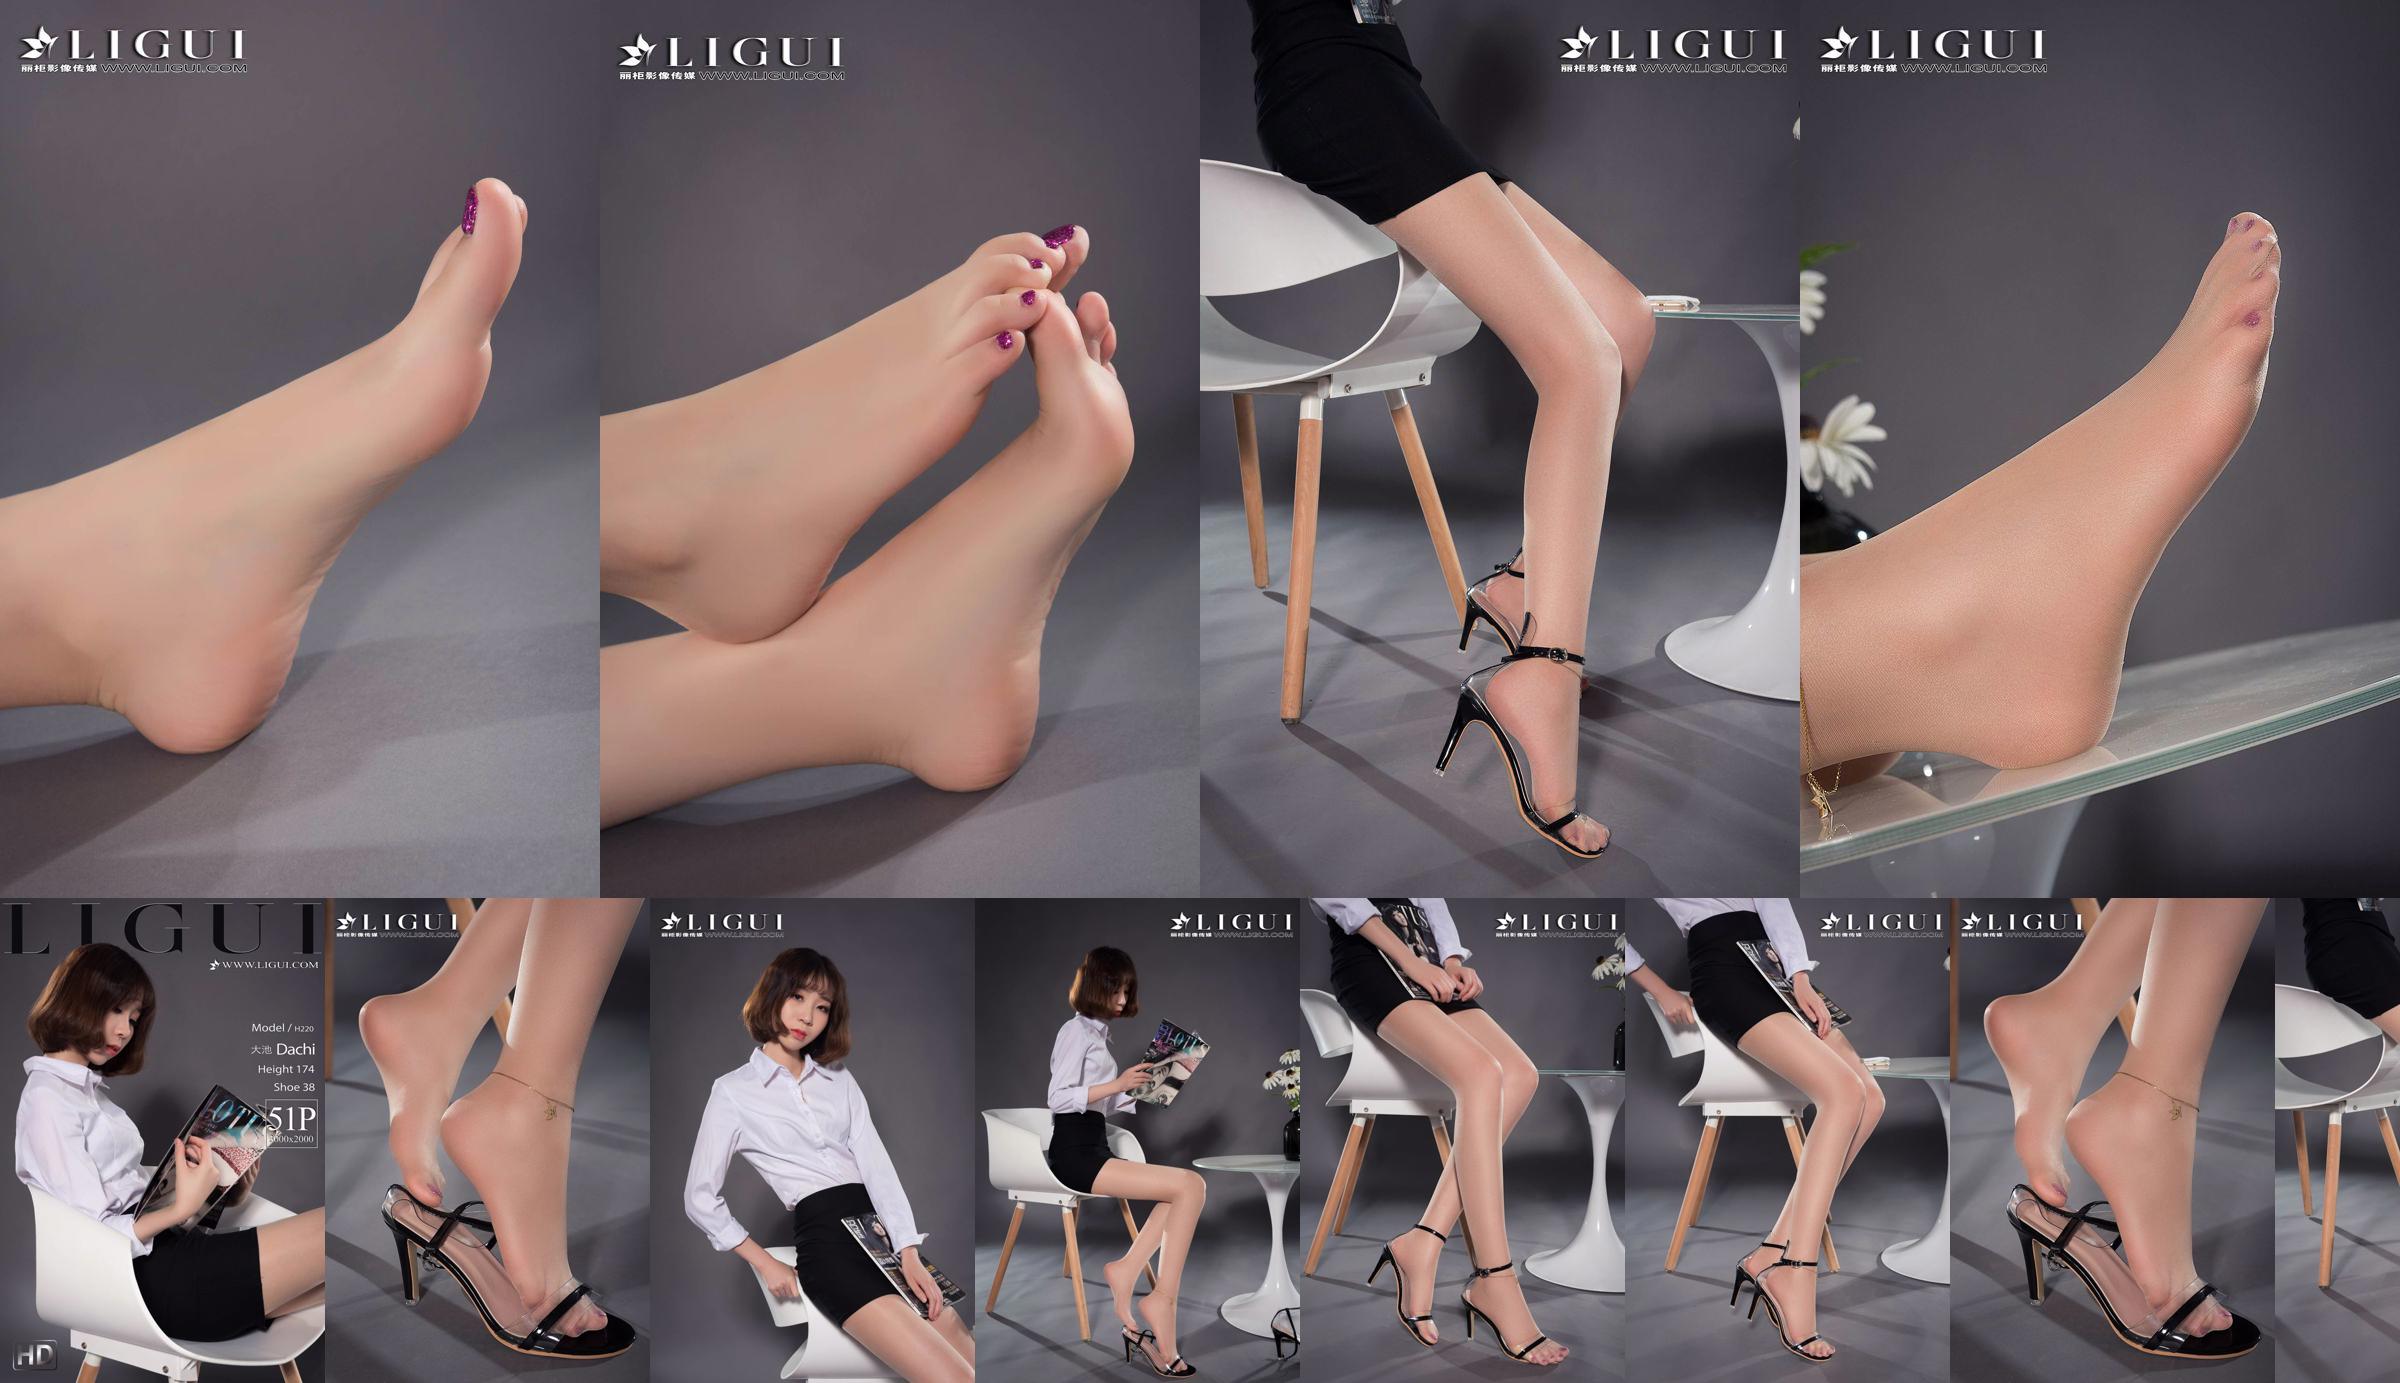 Người mẫu chân Oike "Heo với giày cao gót CV" [Ligui Ligui] Vẻ đẹp Internet No.9a5c6e Trang 7